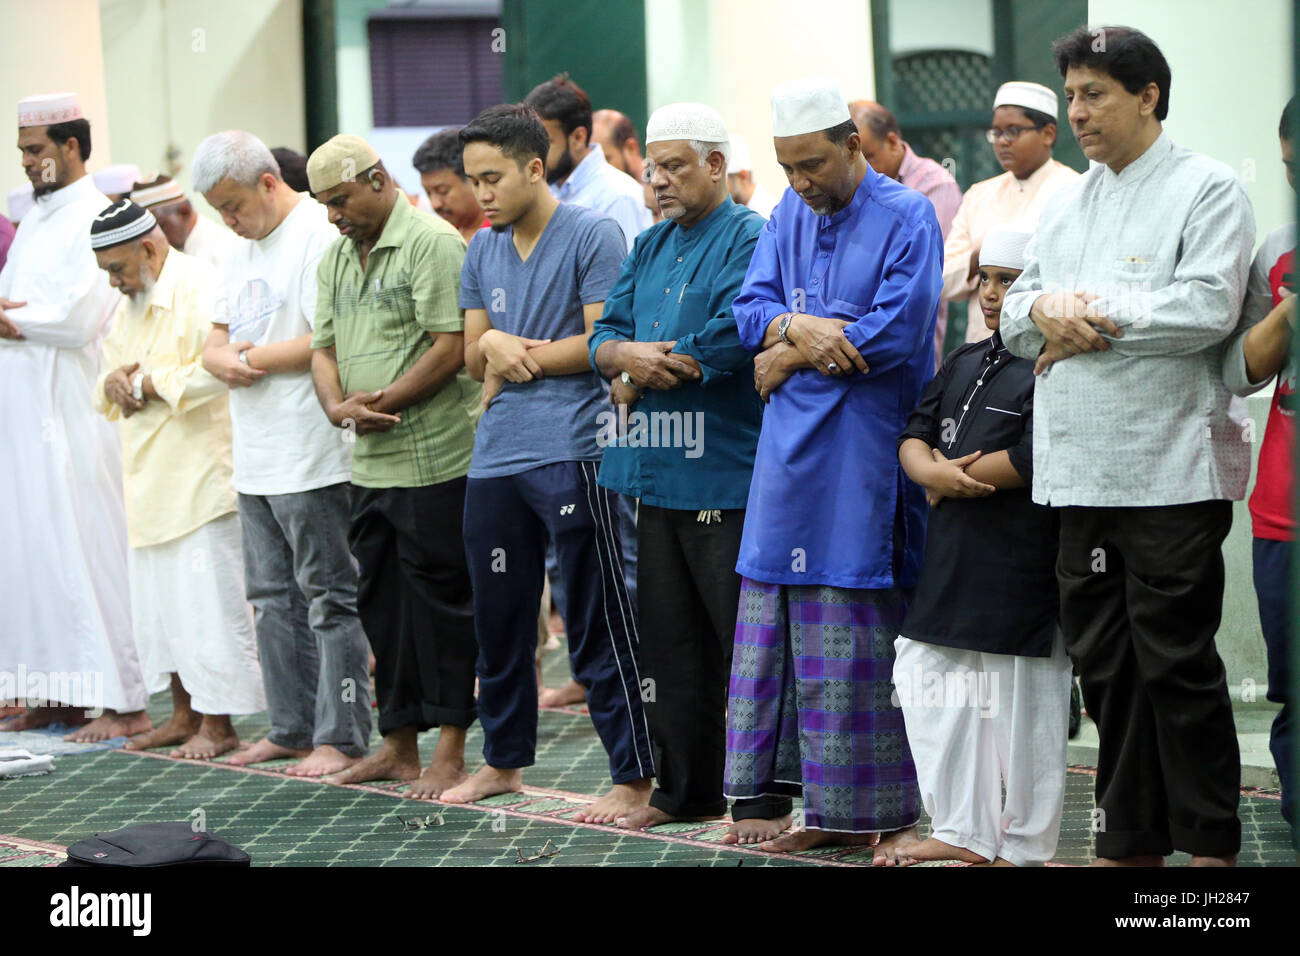 Masjid Jamae befindet sich eine der ältesten Moscheen in Singapur in Chinatown.  Muslime beten. Salat.  Singapur. Stockfoto